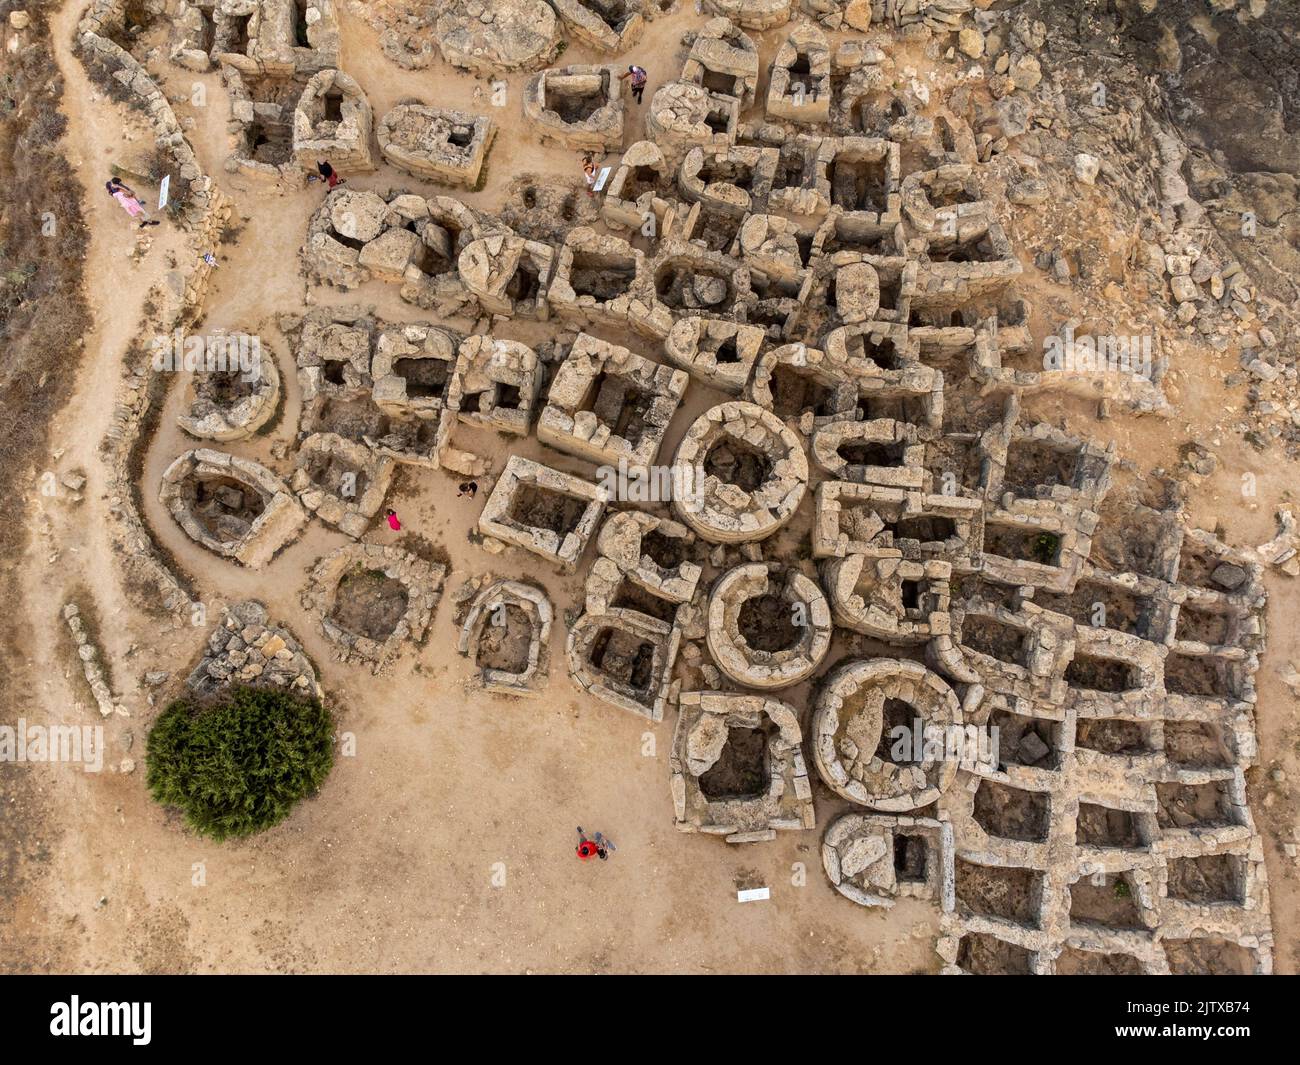 Son Real Nekropole archäologische Stätte, talayotische Nekropole aus dem 7.. Jahrhundert v. Chr., Santa Margarita, Mallorca, Balearen, Spanien. Stockfoto